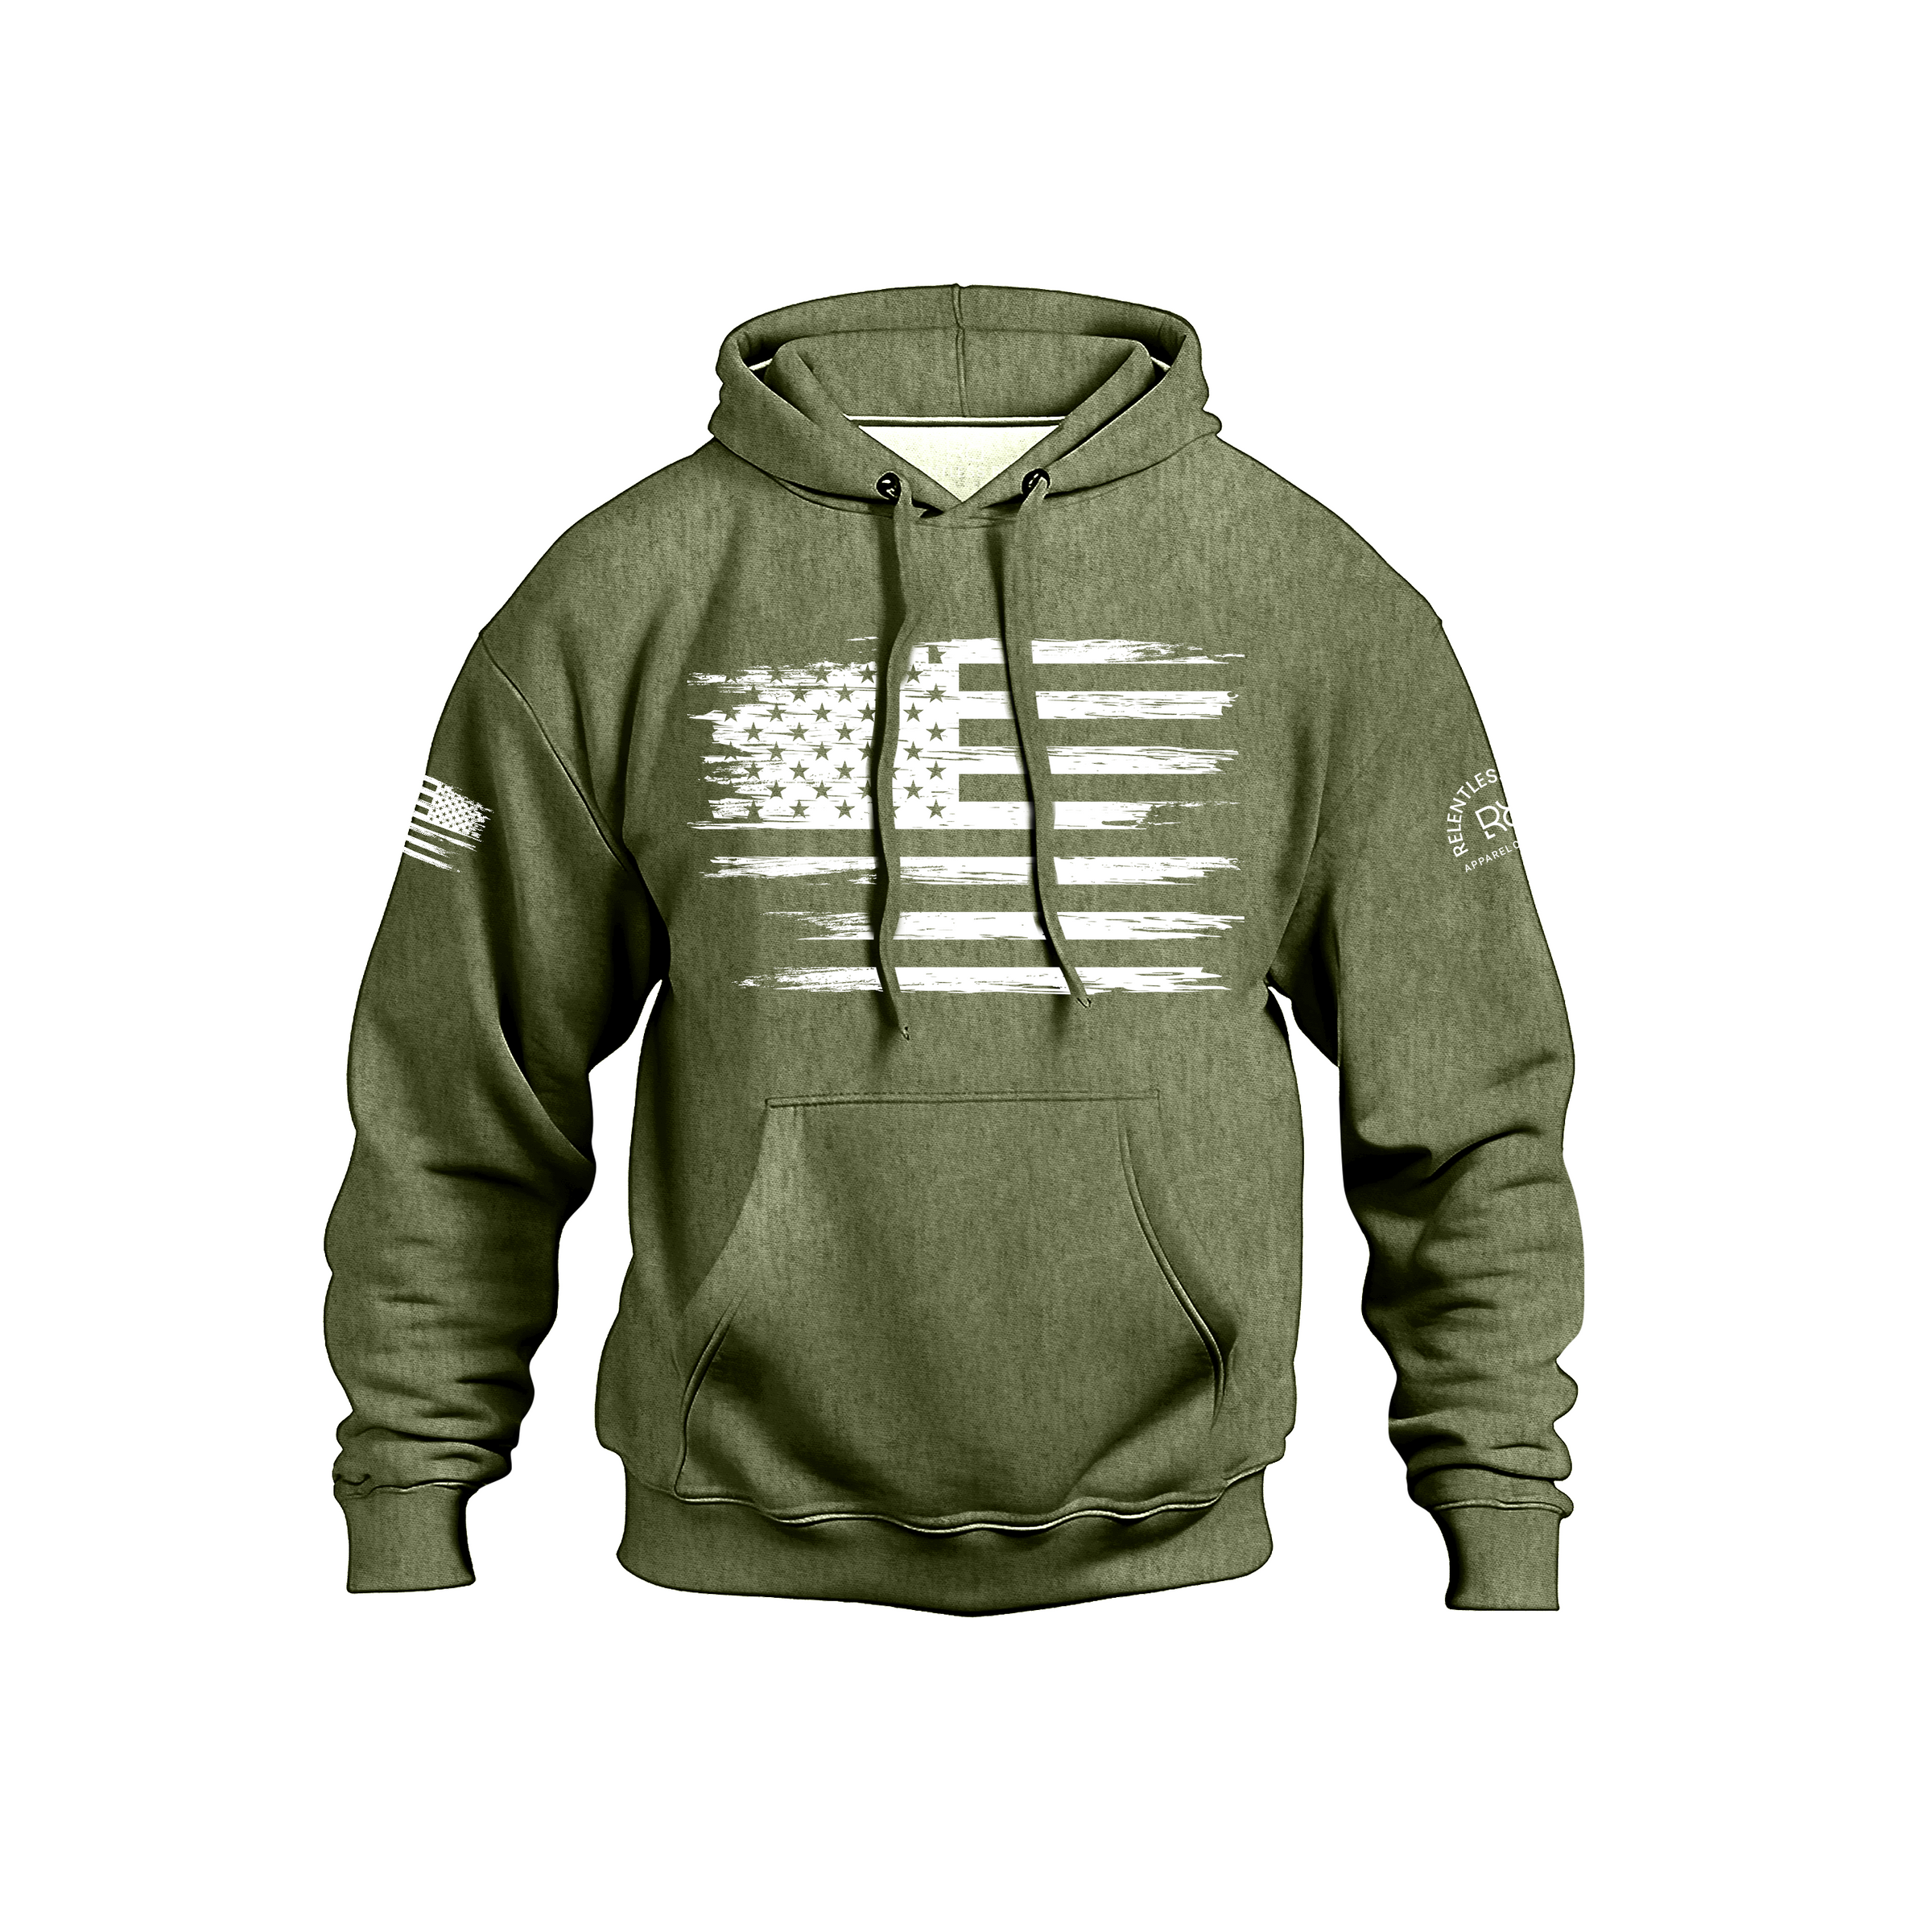 Rebel patriot flag military green hoodie